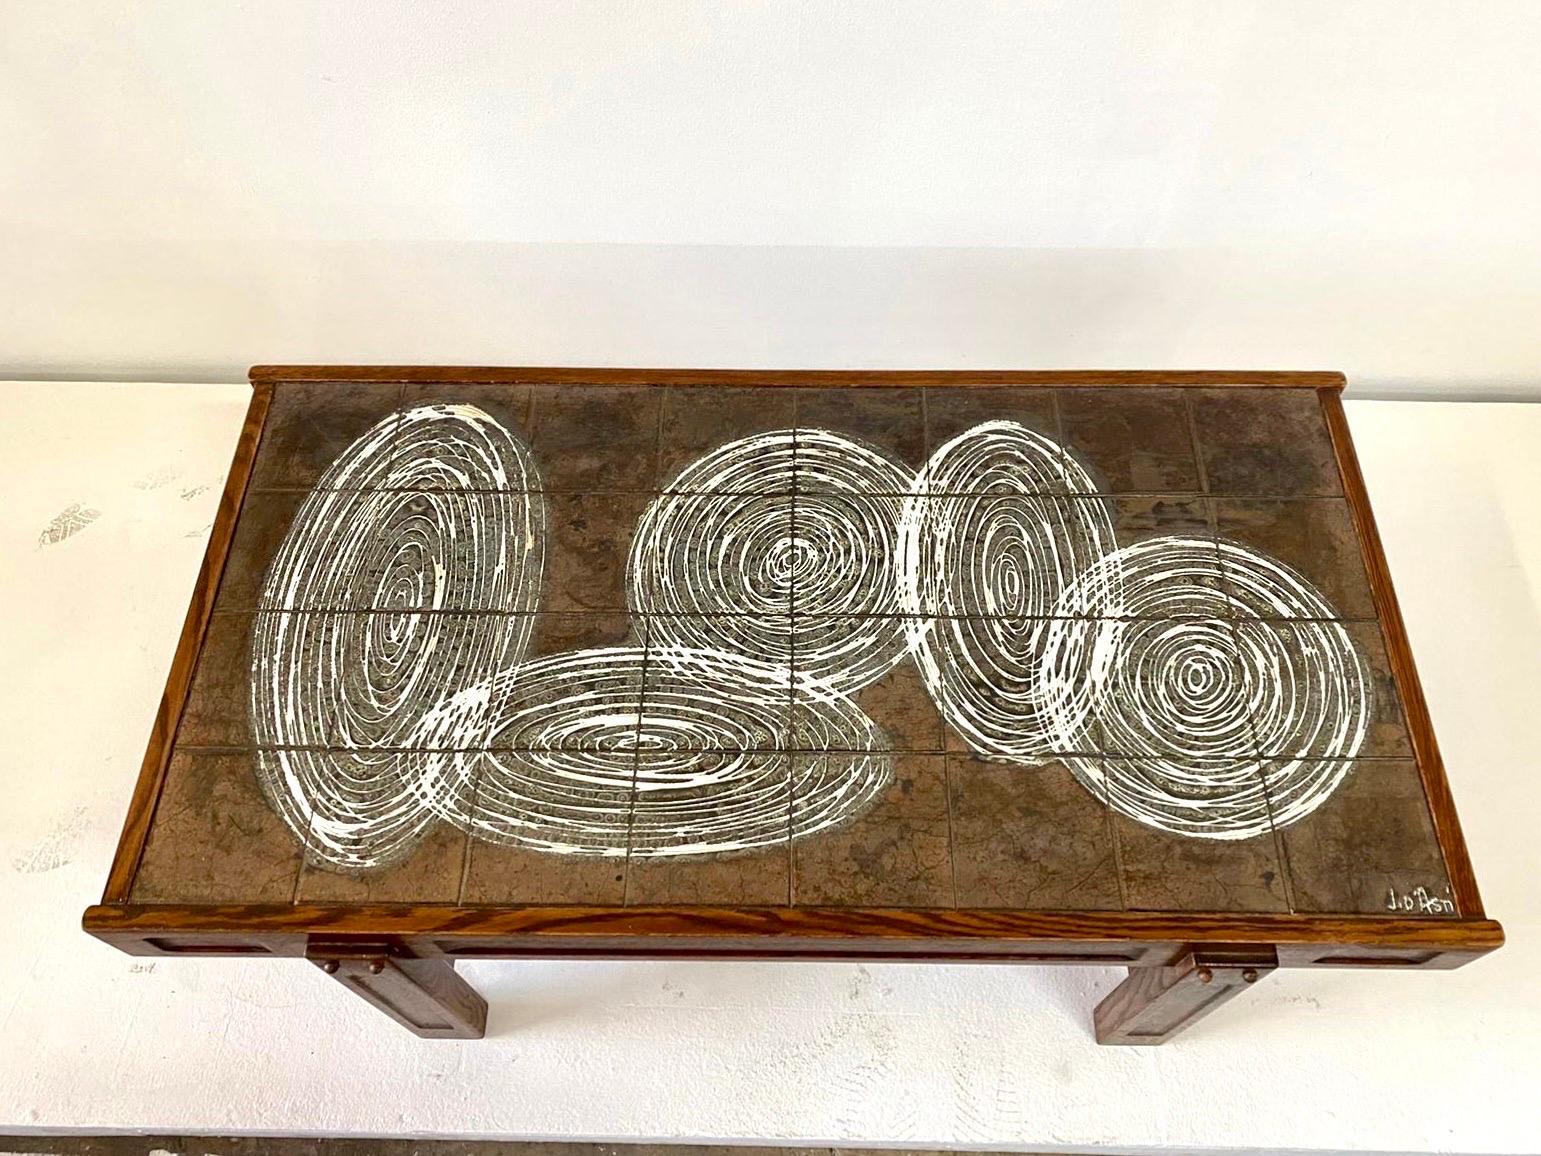 Cette table basse carrelée en céramique, à la fois merveilleusement moderne et vintage, a été fabriquée à Vallauris, France, vers les années 1960. Le design et les couleurs sont très pertinents aujourd'hui, des cercles et des ovales entrelacés